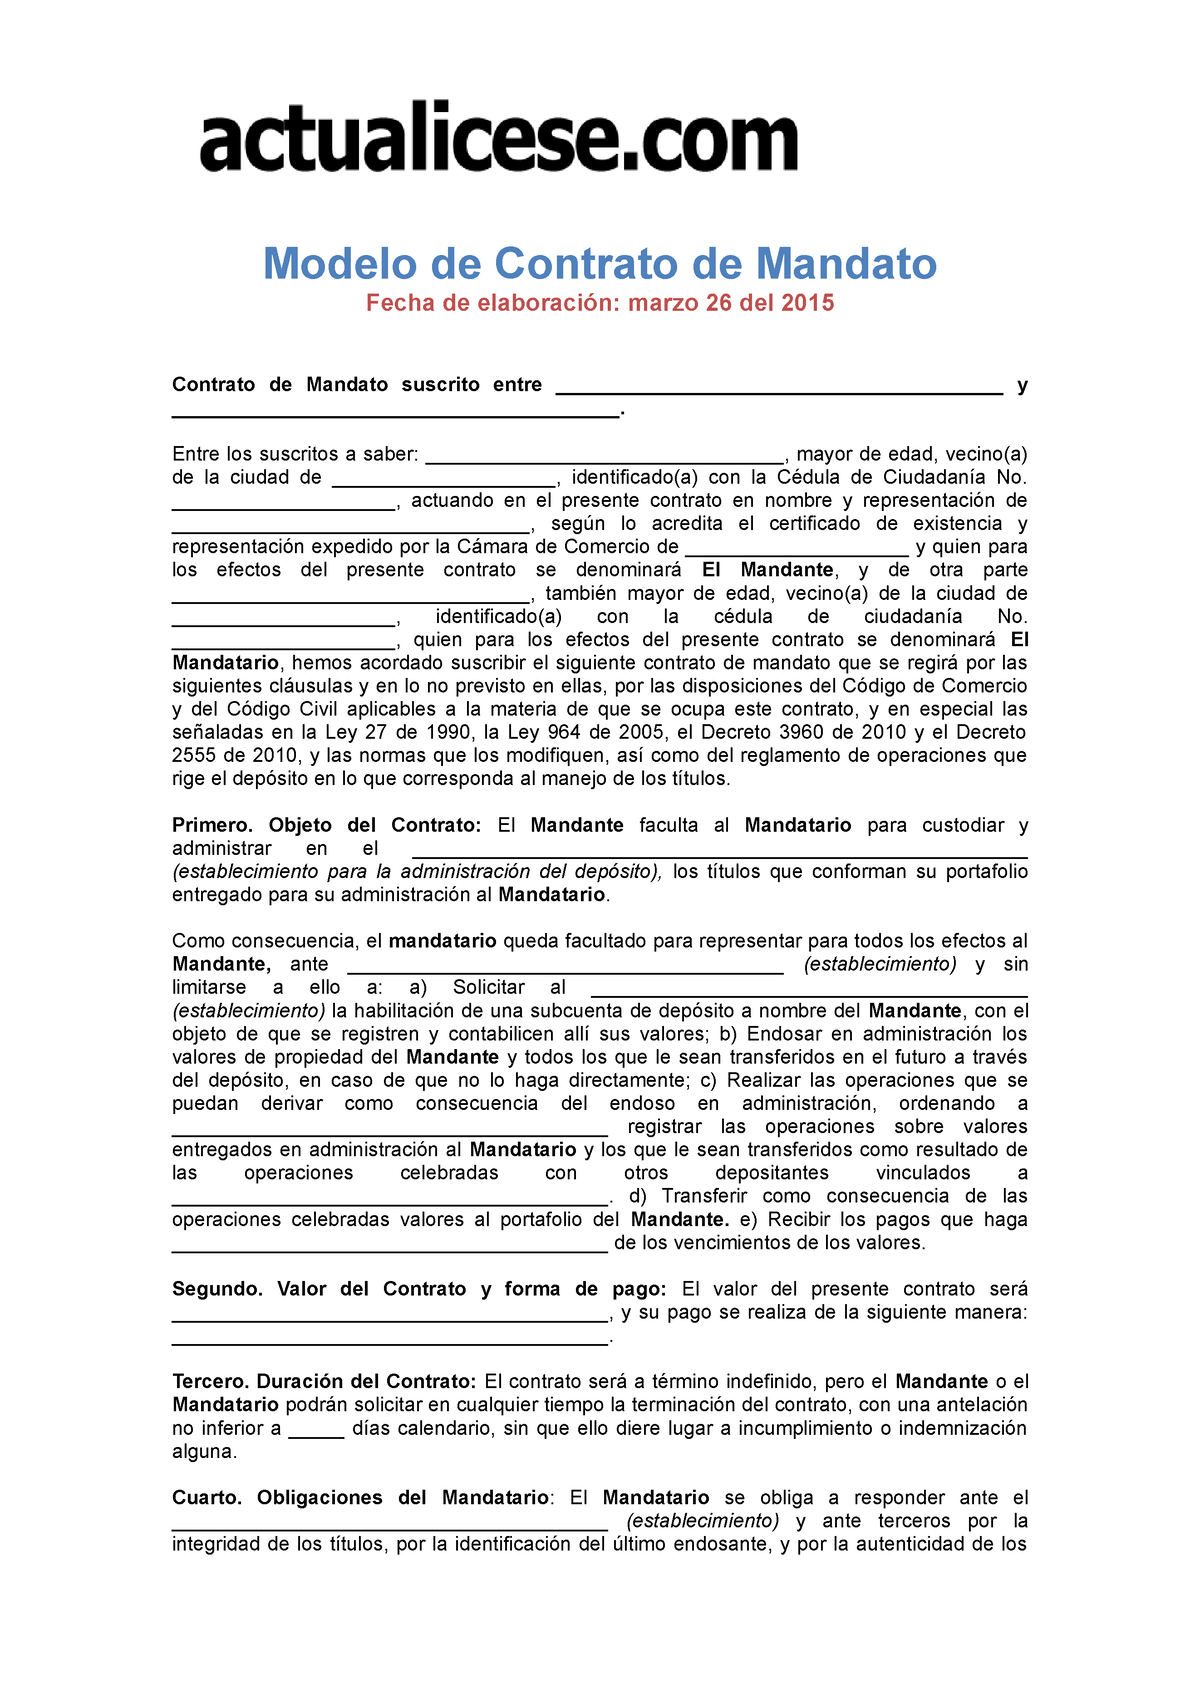 Contrato-mandato - modelo contrato mandato - Modelo de Contrato de Mandato  Fecha de elaboración: - Studocu